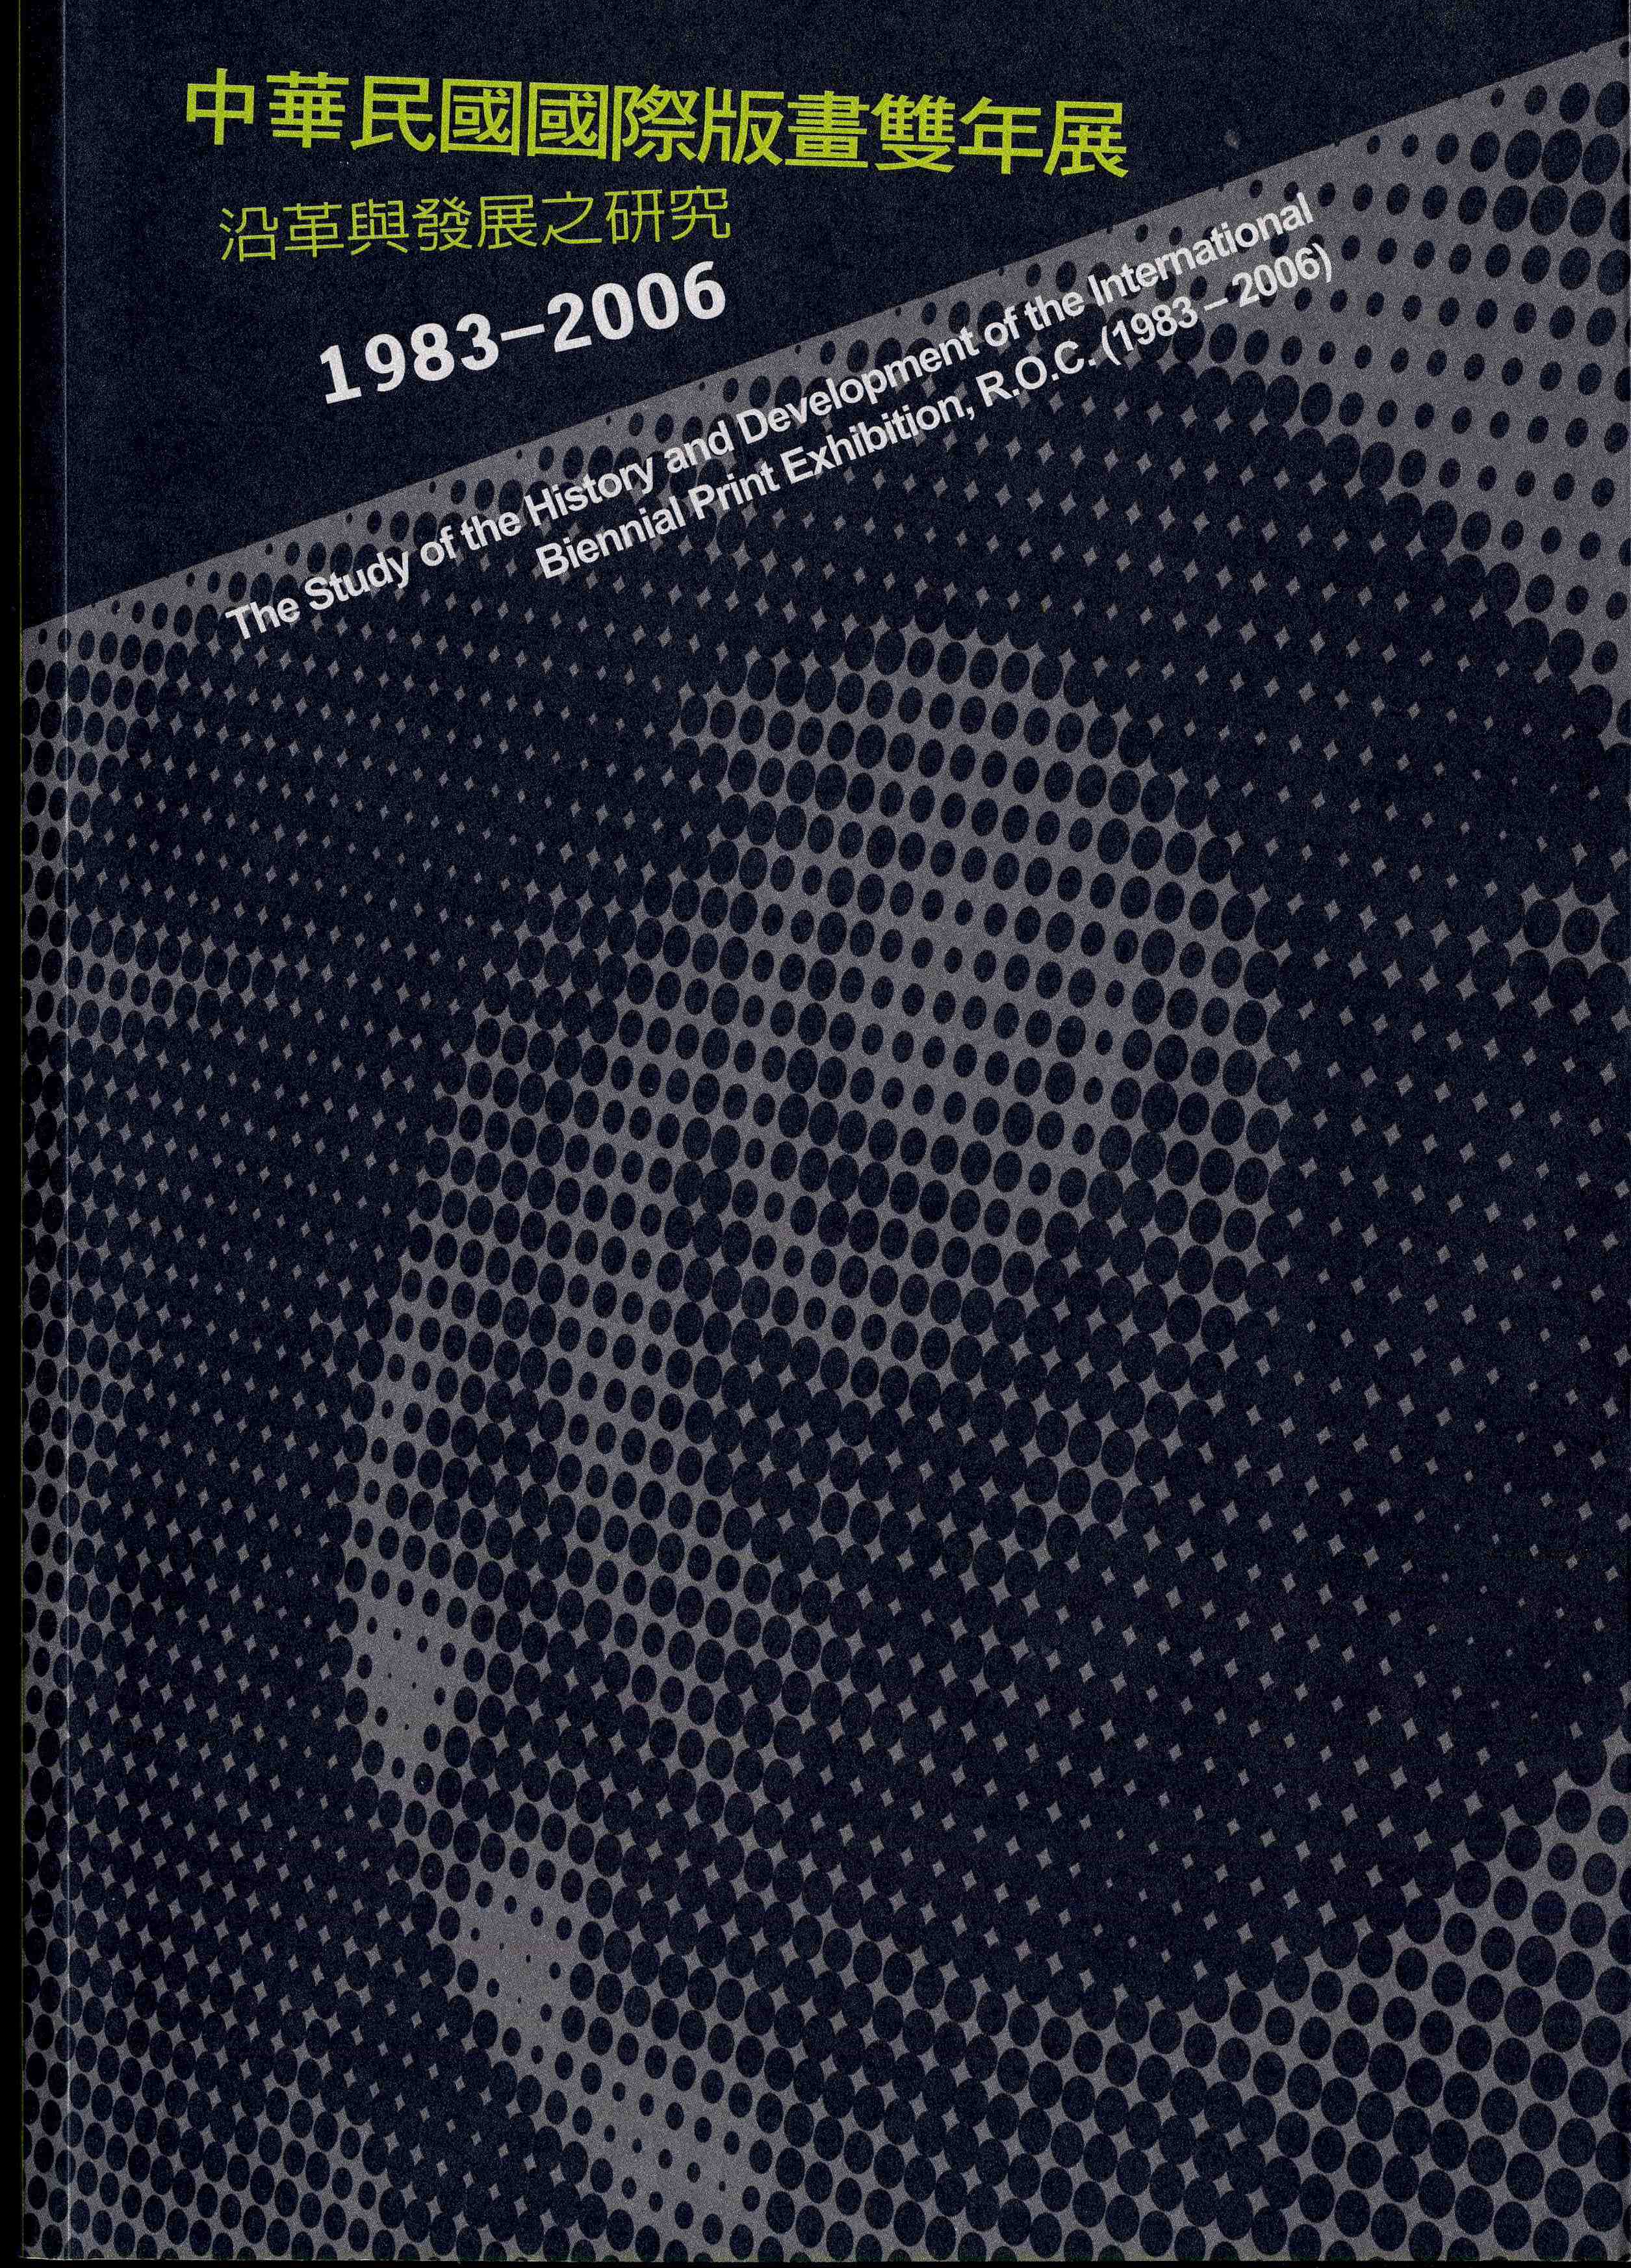 中華民國國際版畫雙年展沿革與發展之研究（1983~2006）